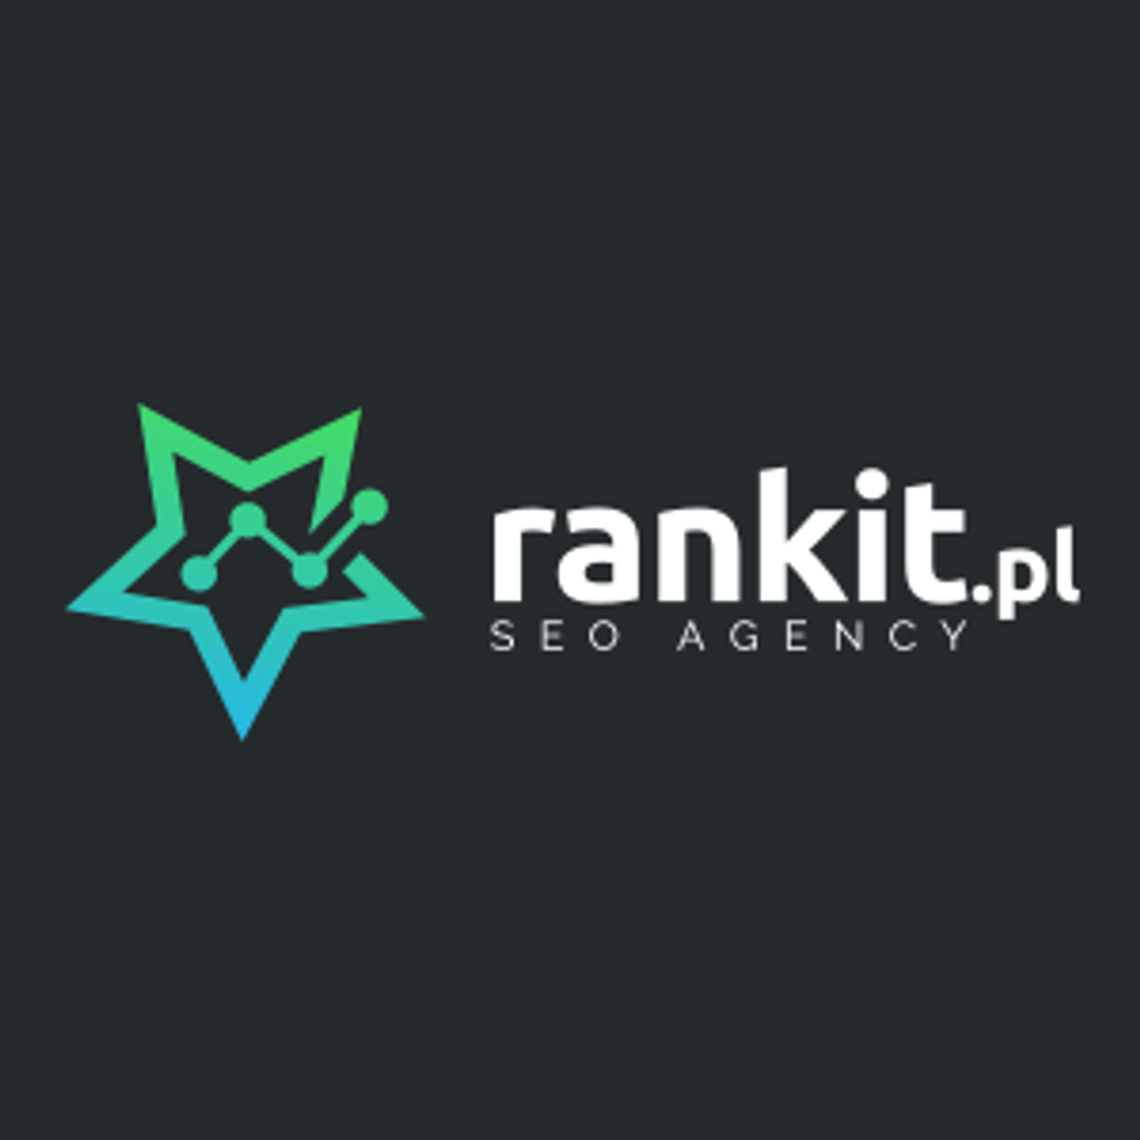 Pozycjonowanie stron, marketing w internecie Rankit.pl